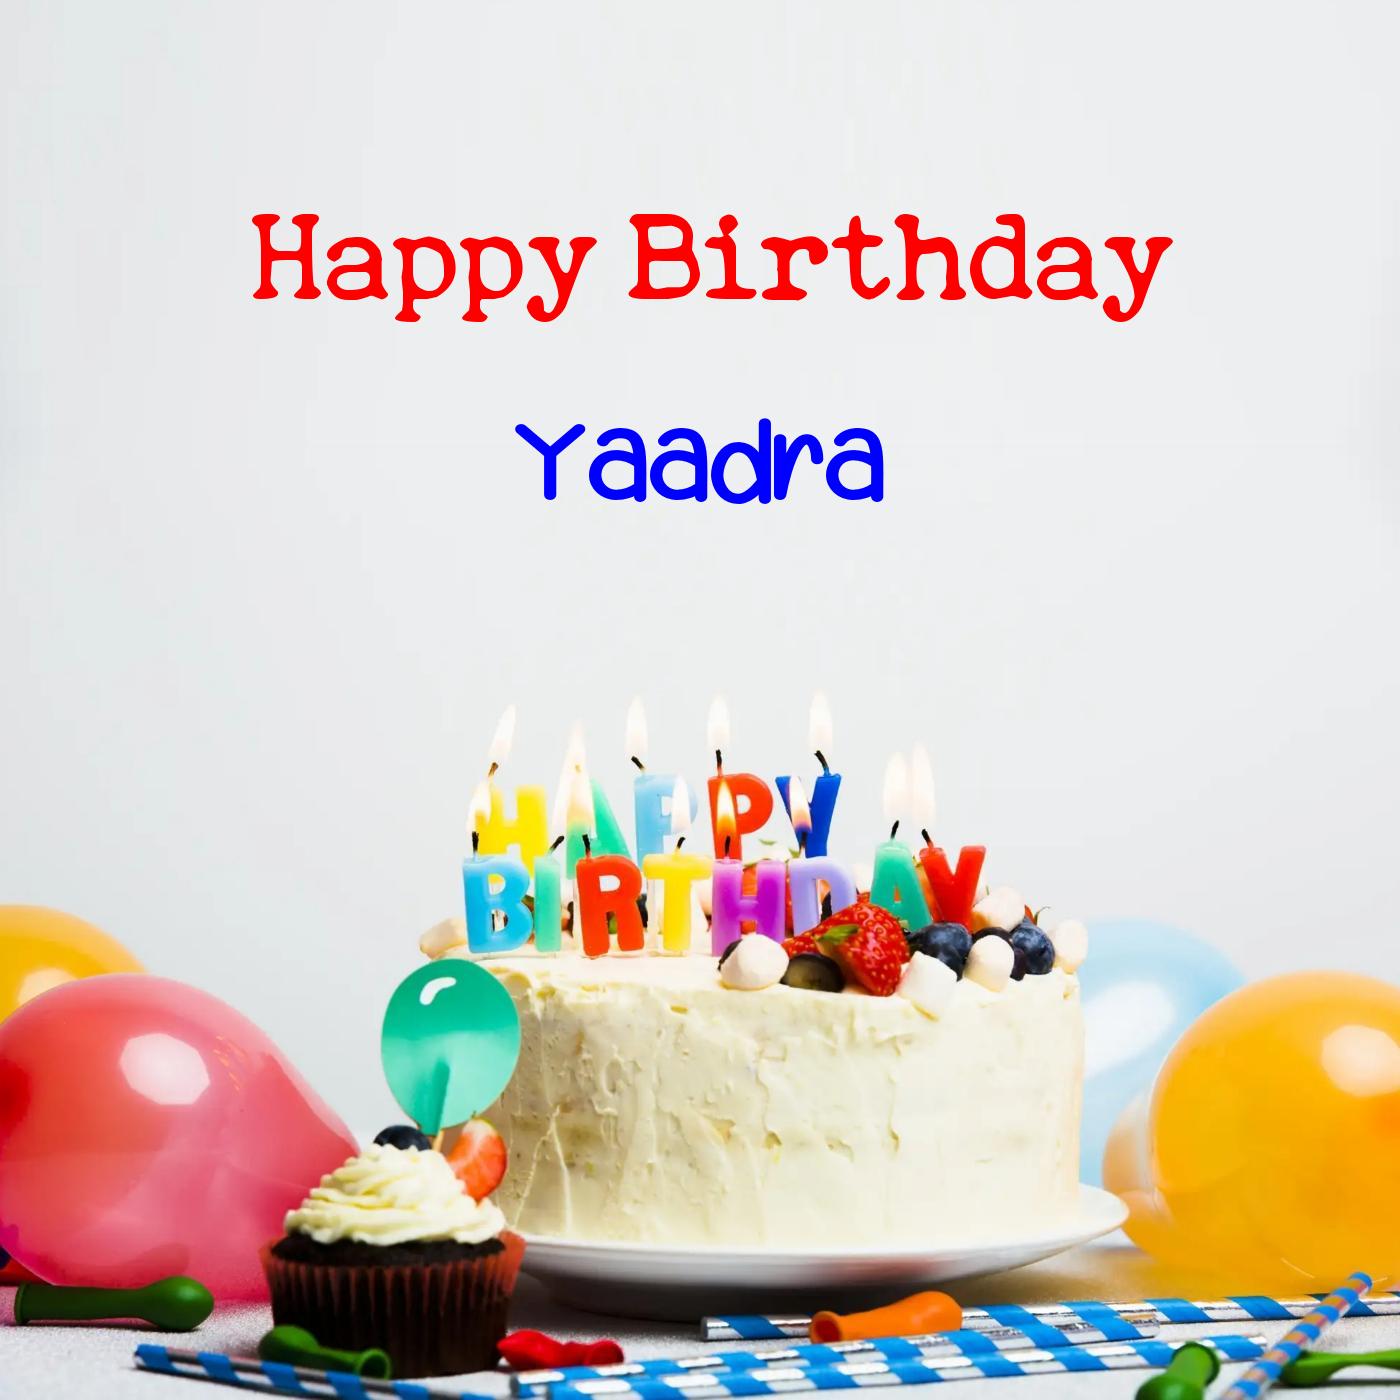 Happy Birthday Yaadra Cake Balloons Card